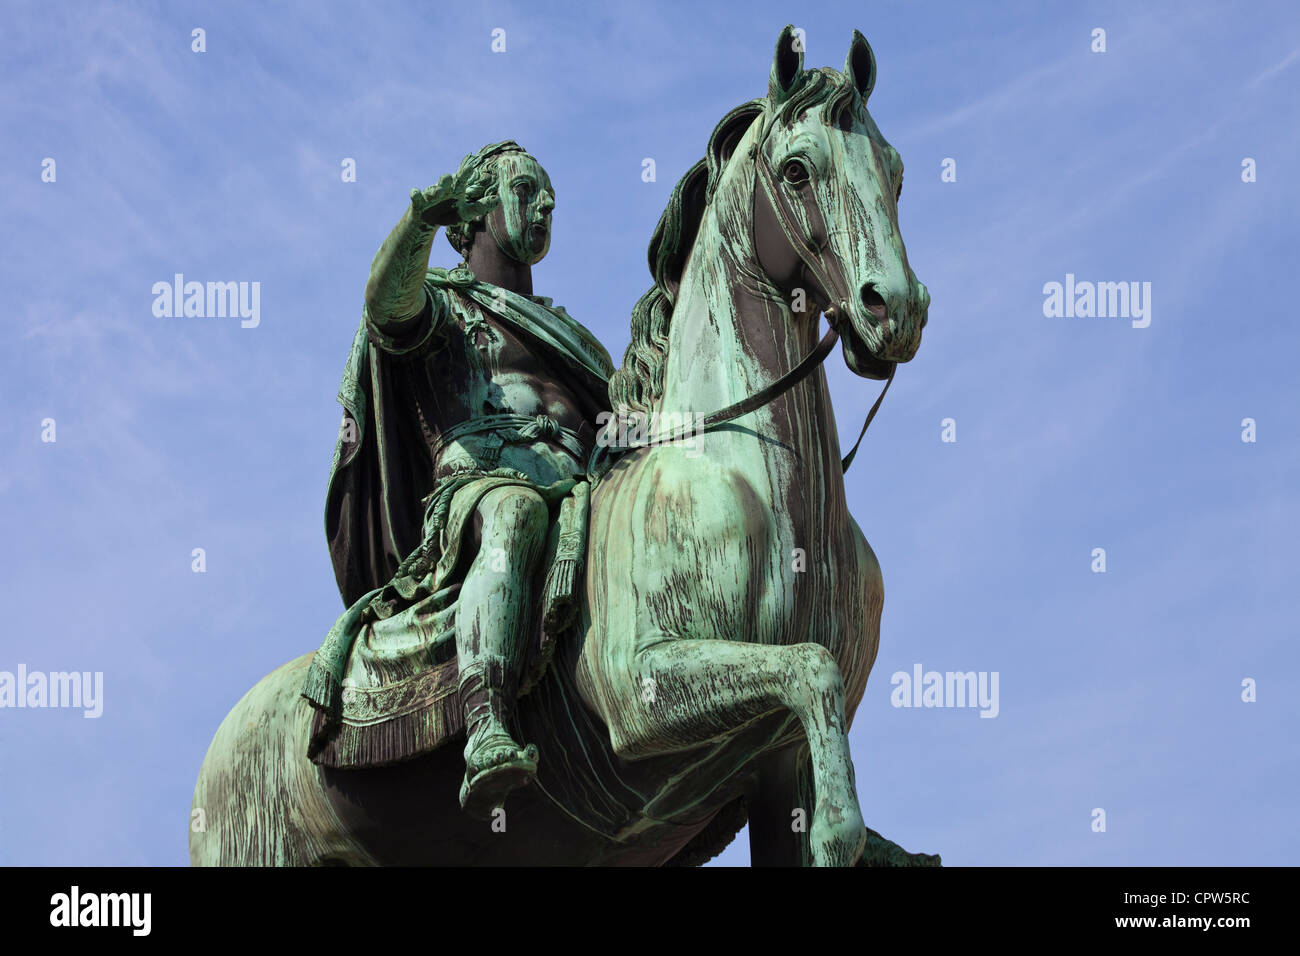 Equestrian Statue of Joseph the Second (1795-1806) by Franz Anton von Zauner (1746-1822) Bronze, Josefplatz, Vienna, Austria Stock Photo